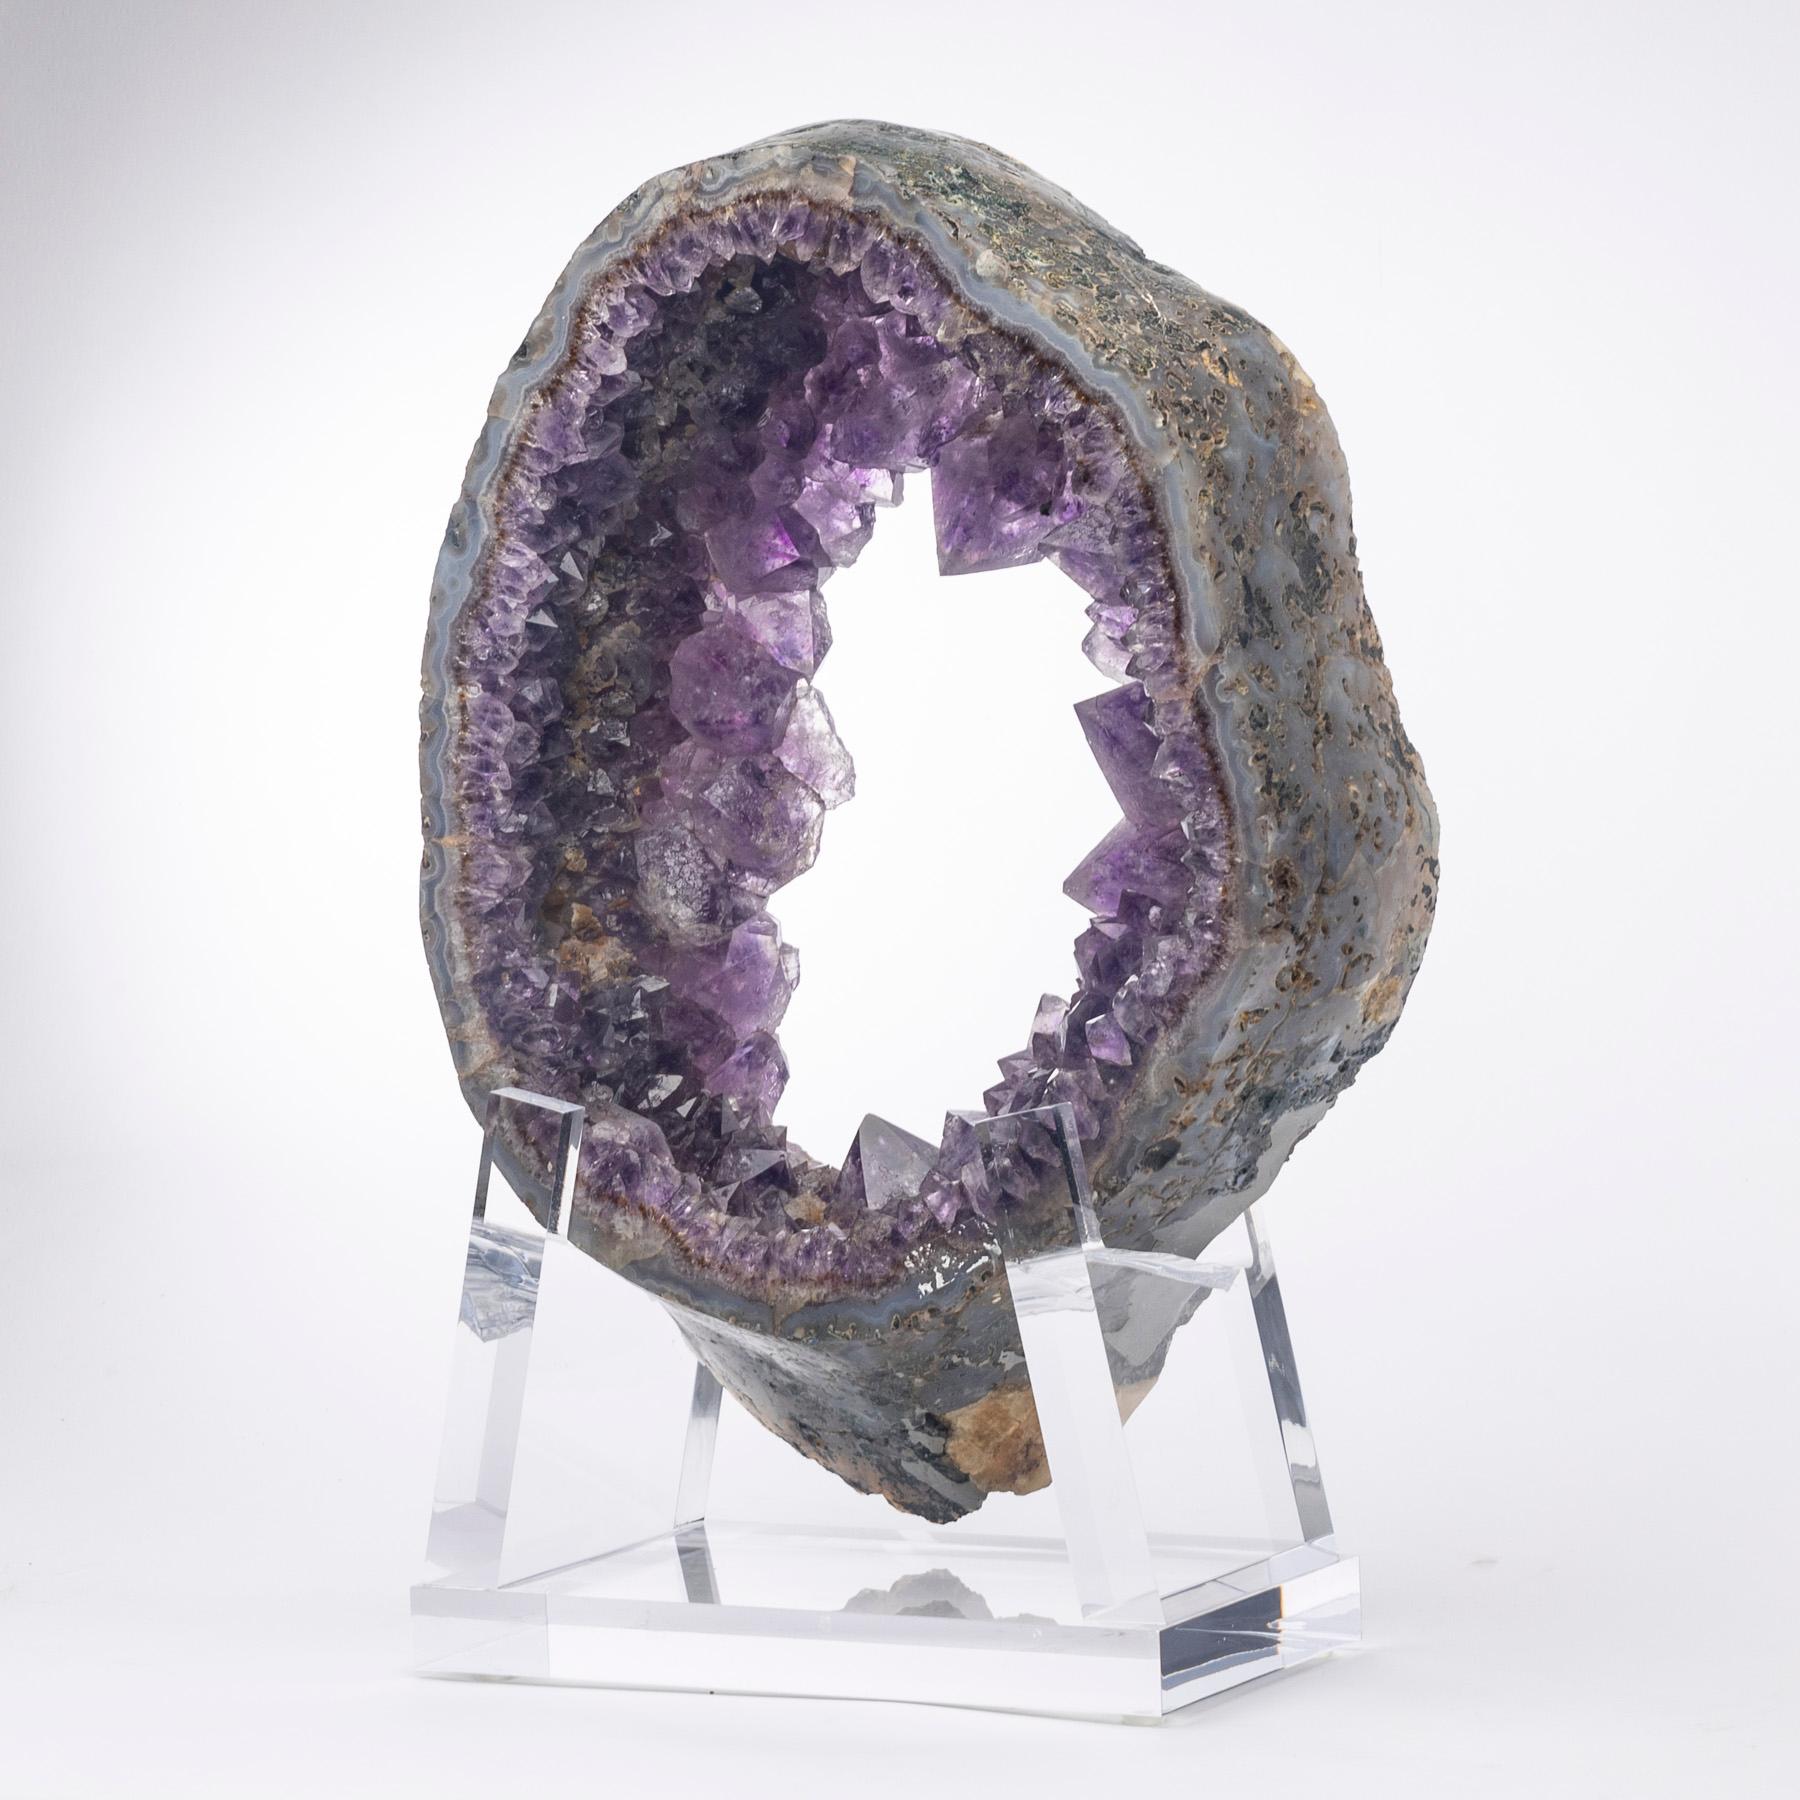 Organic Modern Uruguay Amethyst Quartz Crystals Geode on Custom Acrylic Base For Sale